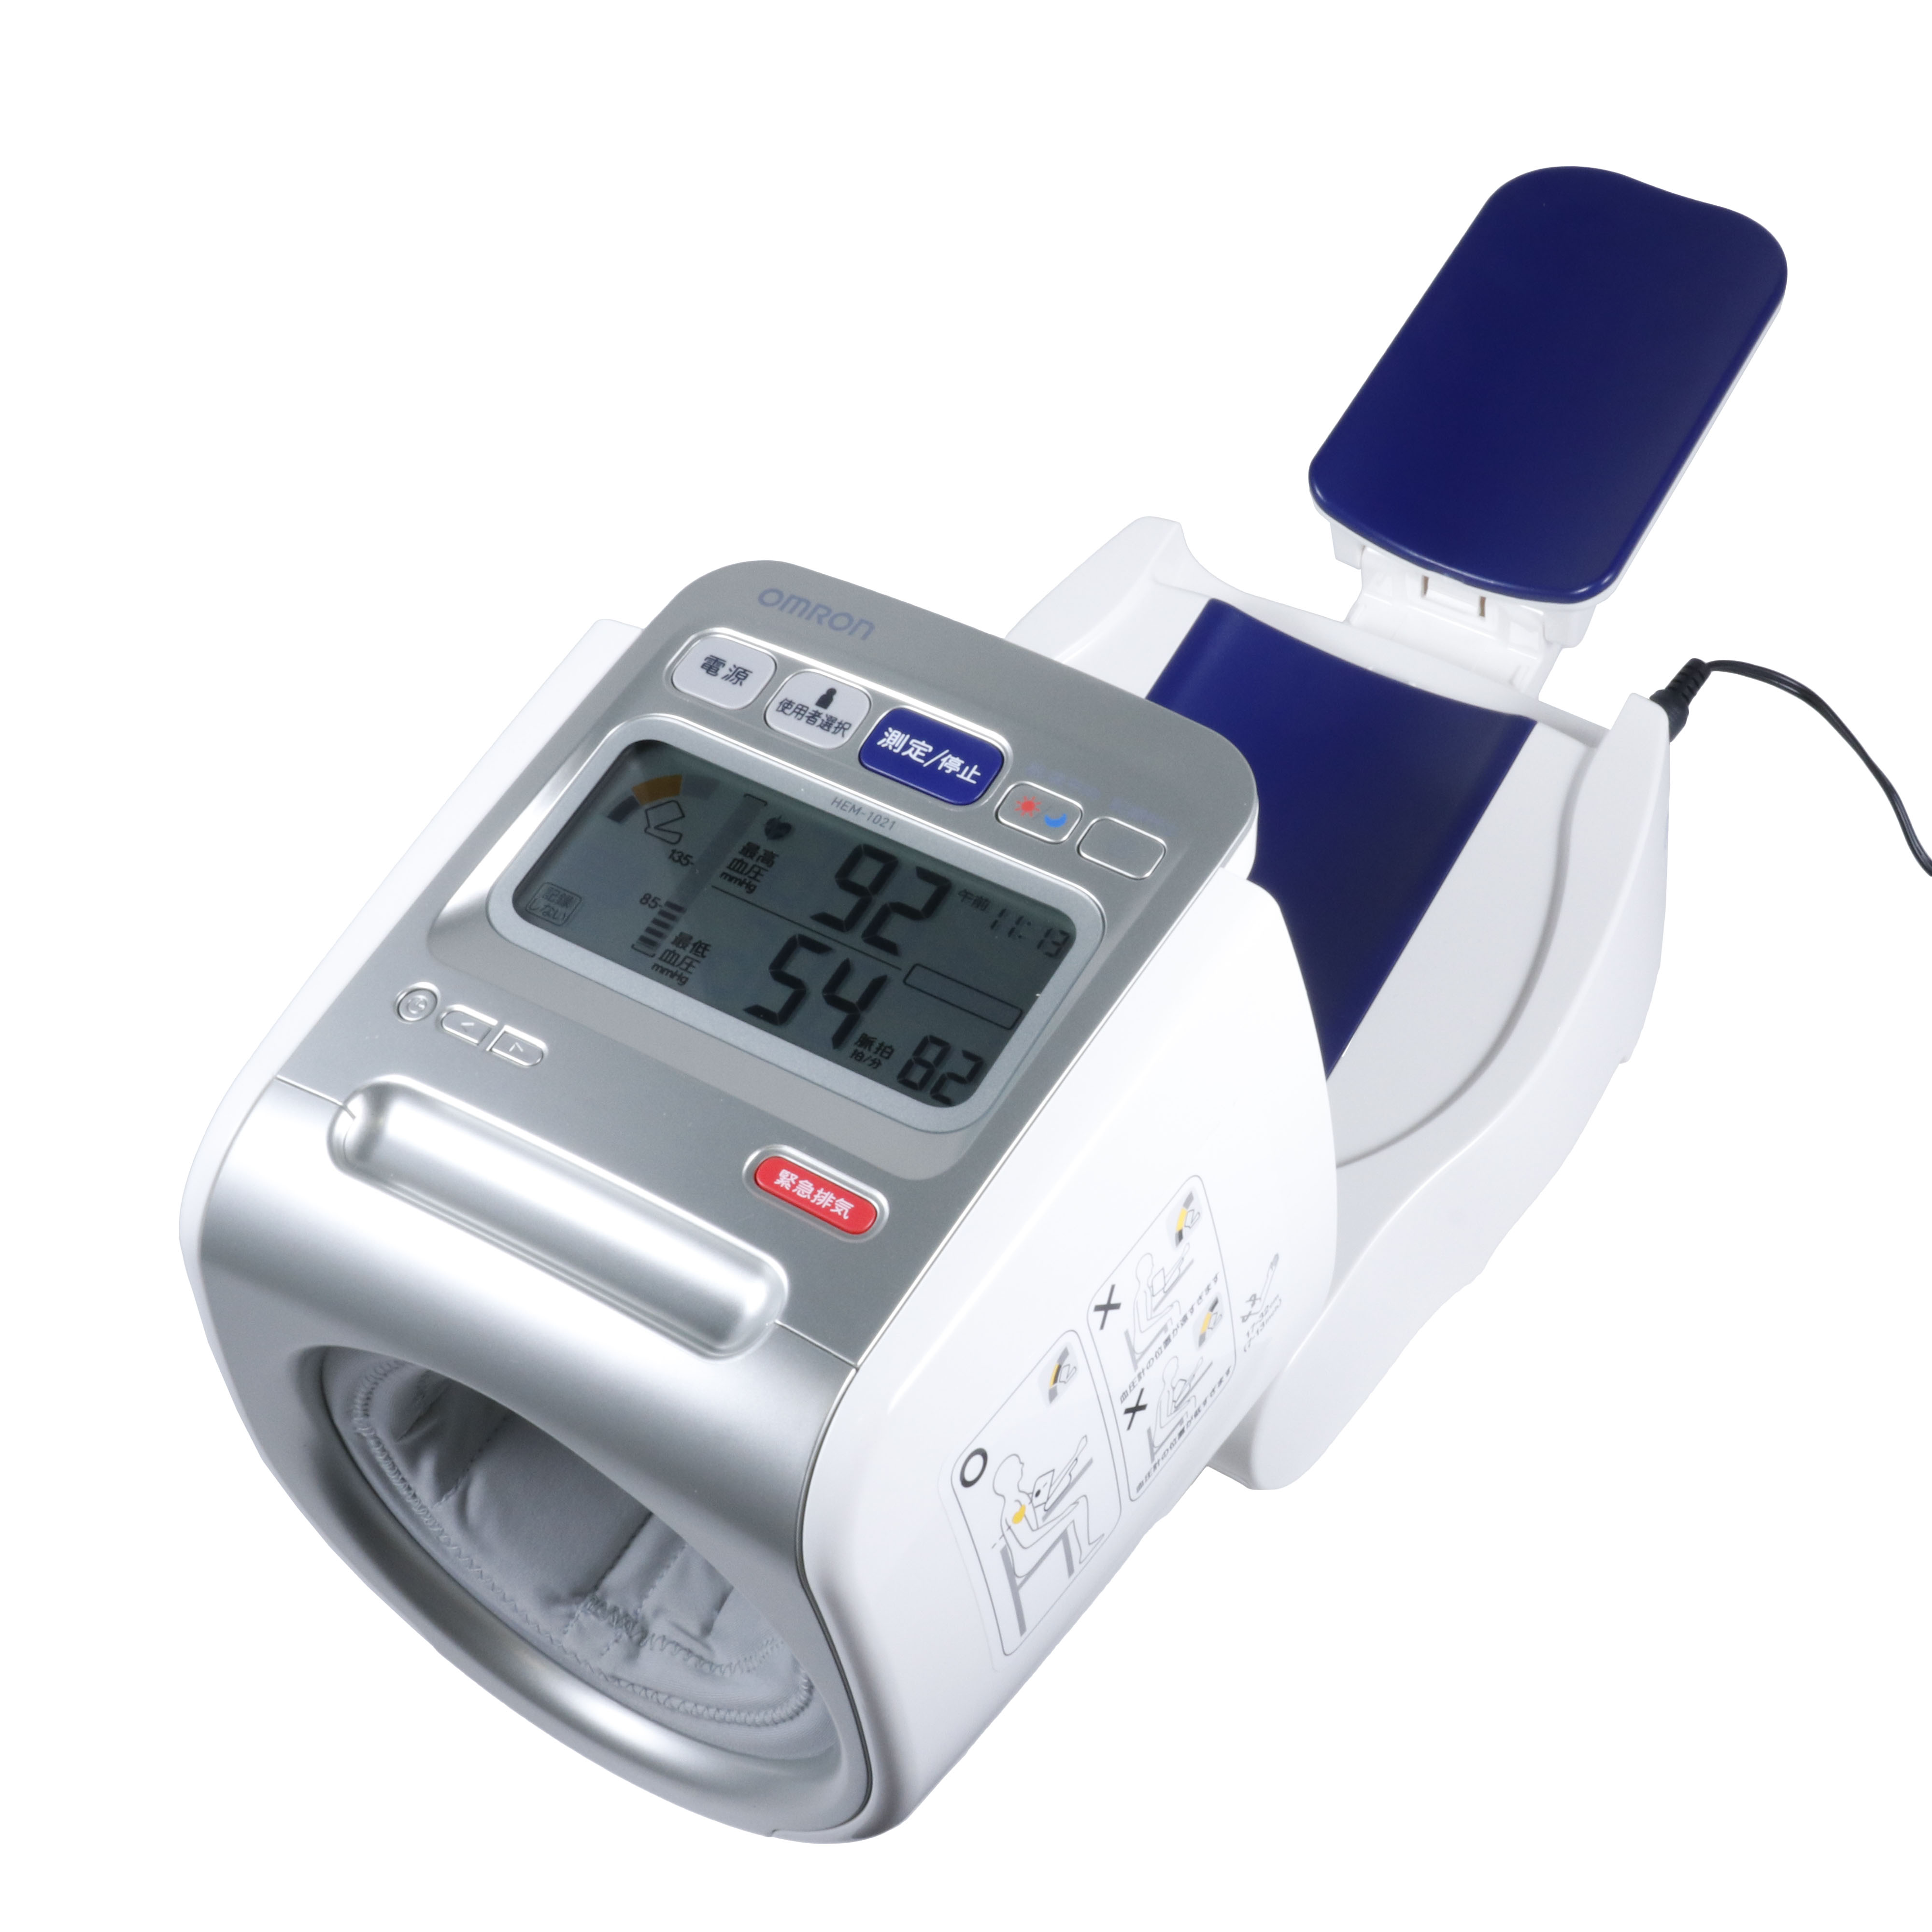 オムロン 血圧計 HCR-7501T 上腕式血圧計 スマホ連動 Bluetooth対応